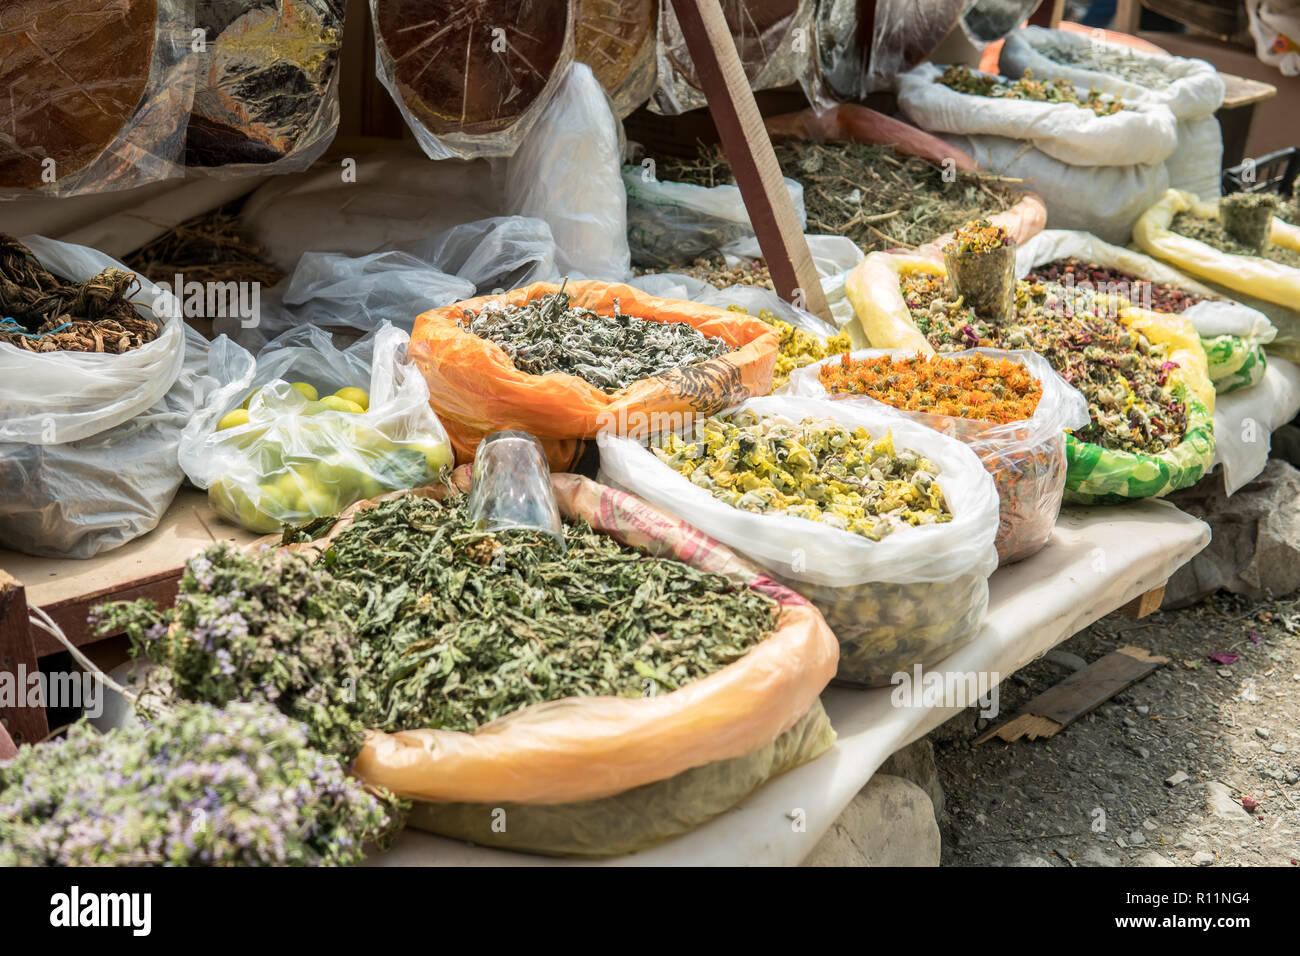 Dried herbs for sale. Eastern Herbal bazaar. Stock Photo